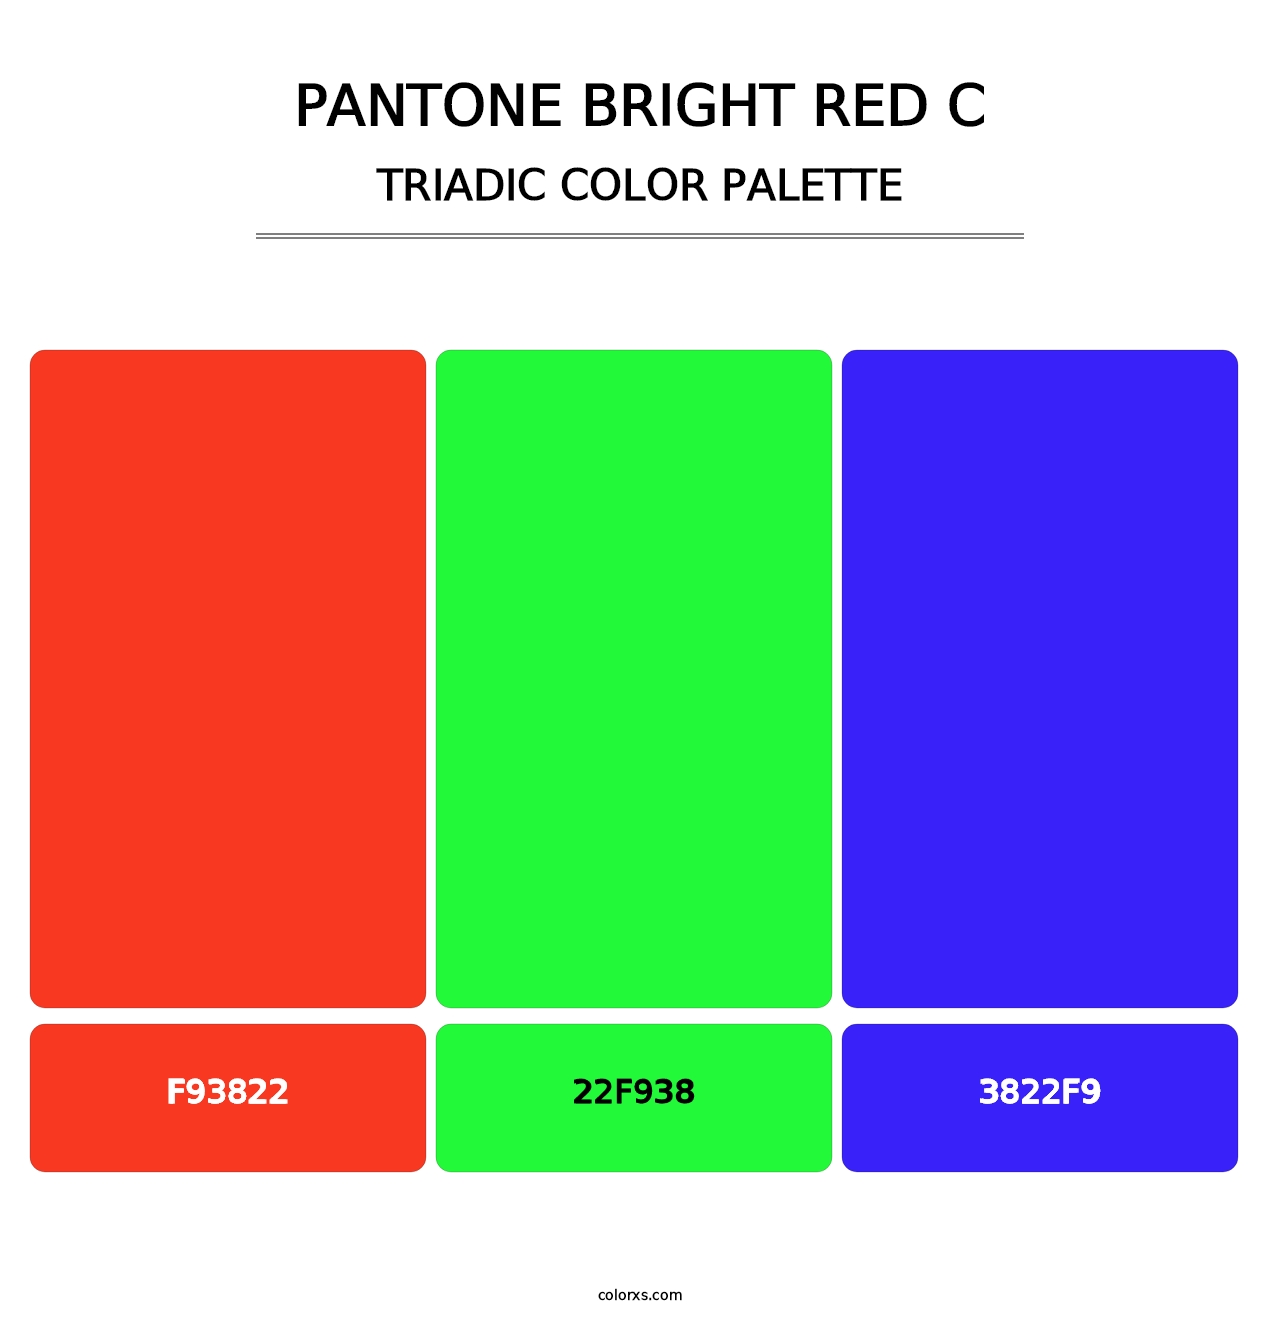 PANTONE Bright Red C - Triadic Color Palette